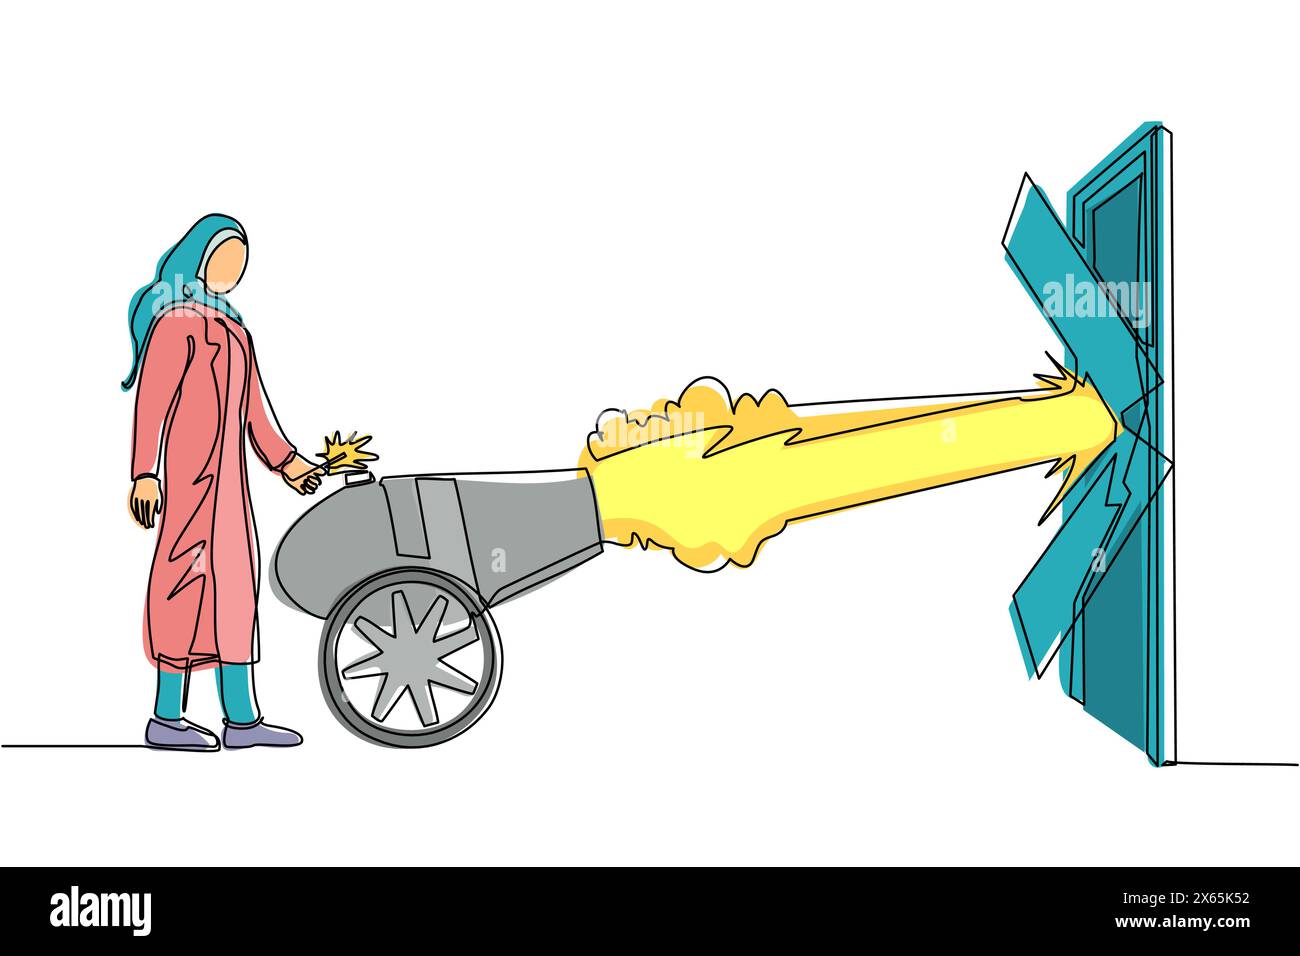 Une seule ligne continue dessinant une femme d'affaires arabe enflamme un canon devant la porte et détruisant la porte. Éliminer la barrière des entrées, détruire obst Illustration de Vecteur